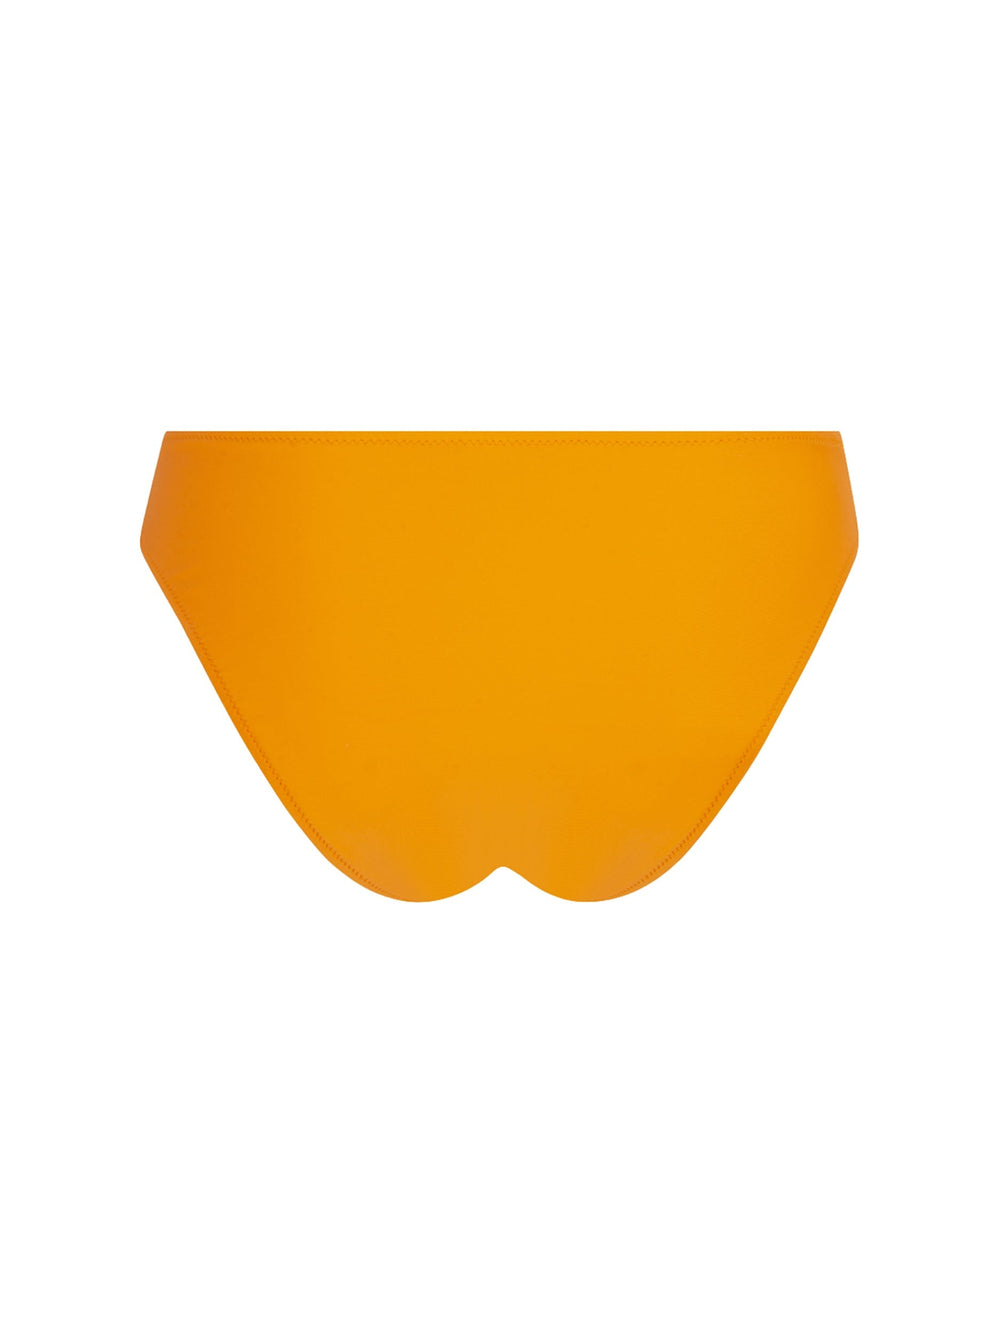 Antigel от Lise Charmel - Плавки-бикини La Chiquissima с широкими боками и низом Оранжевые полные трусы-бикини Antigel от Lise Charmel Swimwear